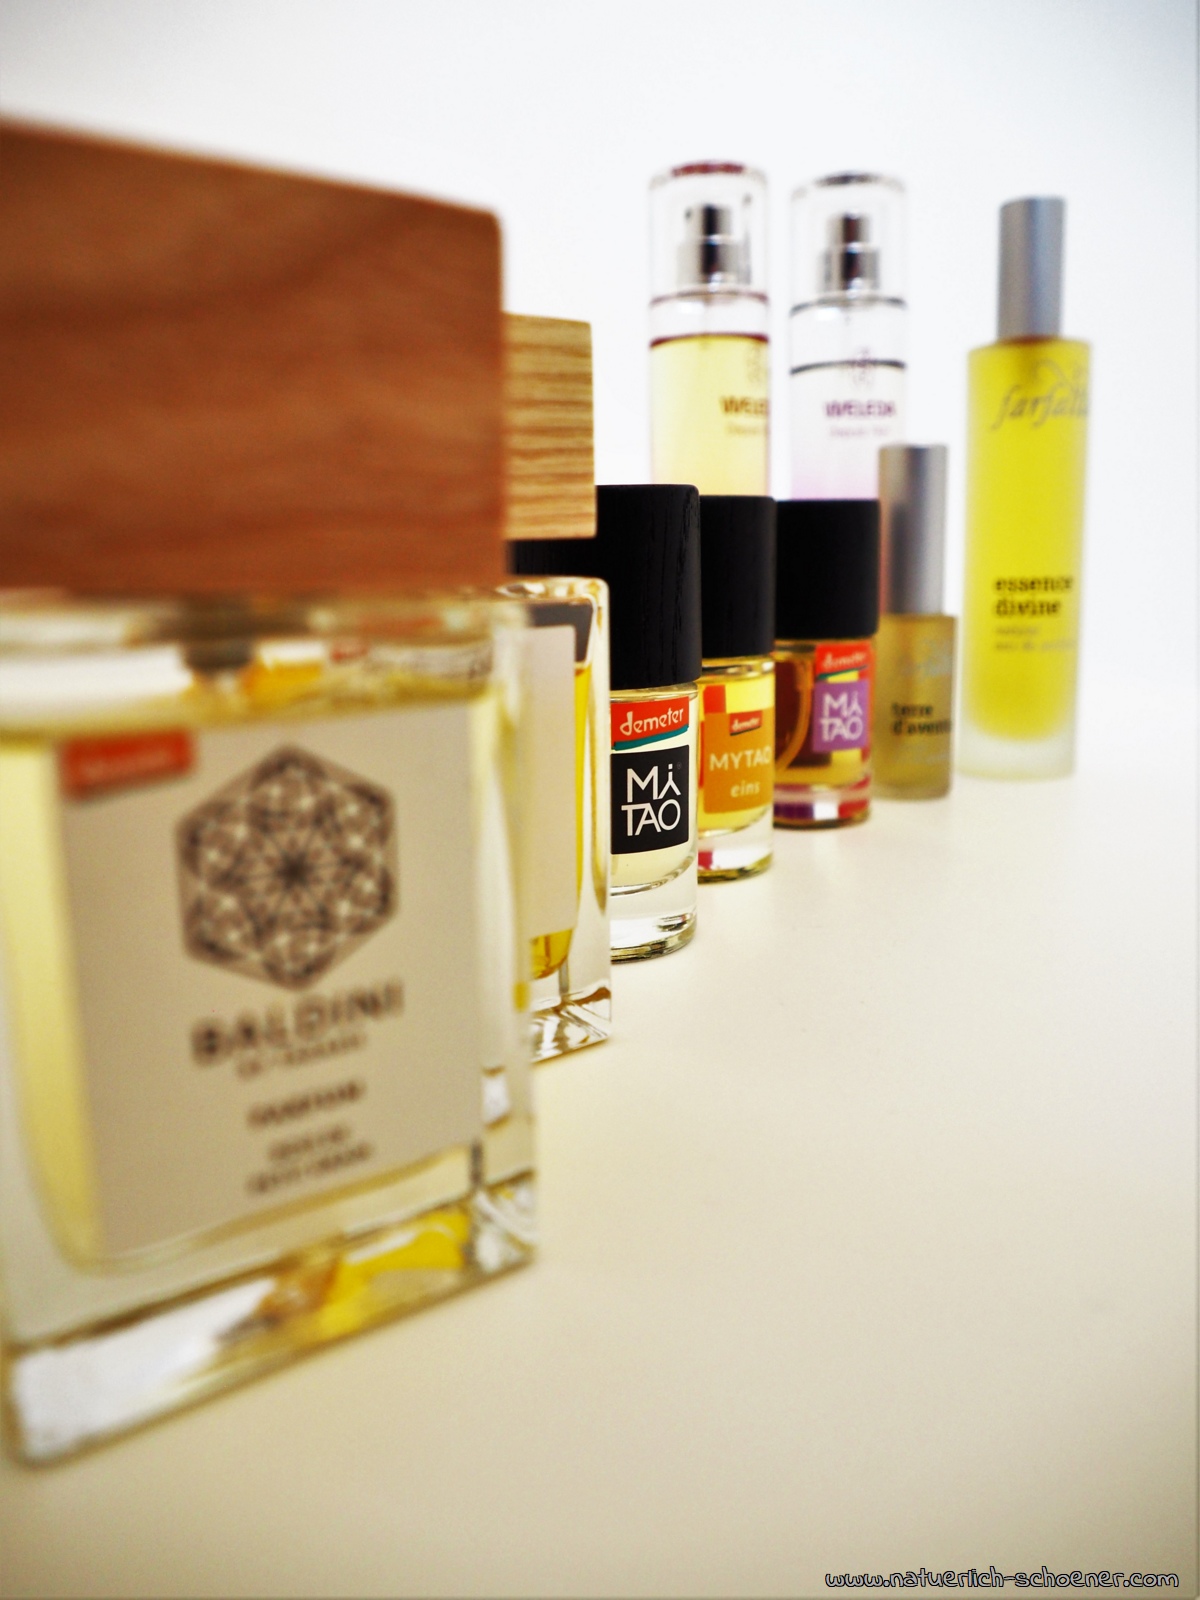 Naturparfum - Vorteile gegenüber konventionellen Parfums